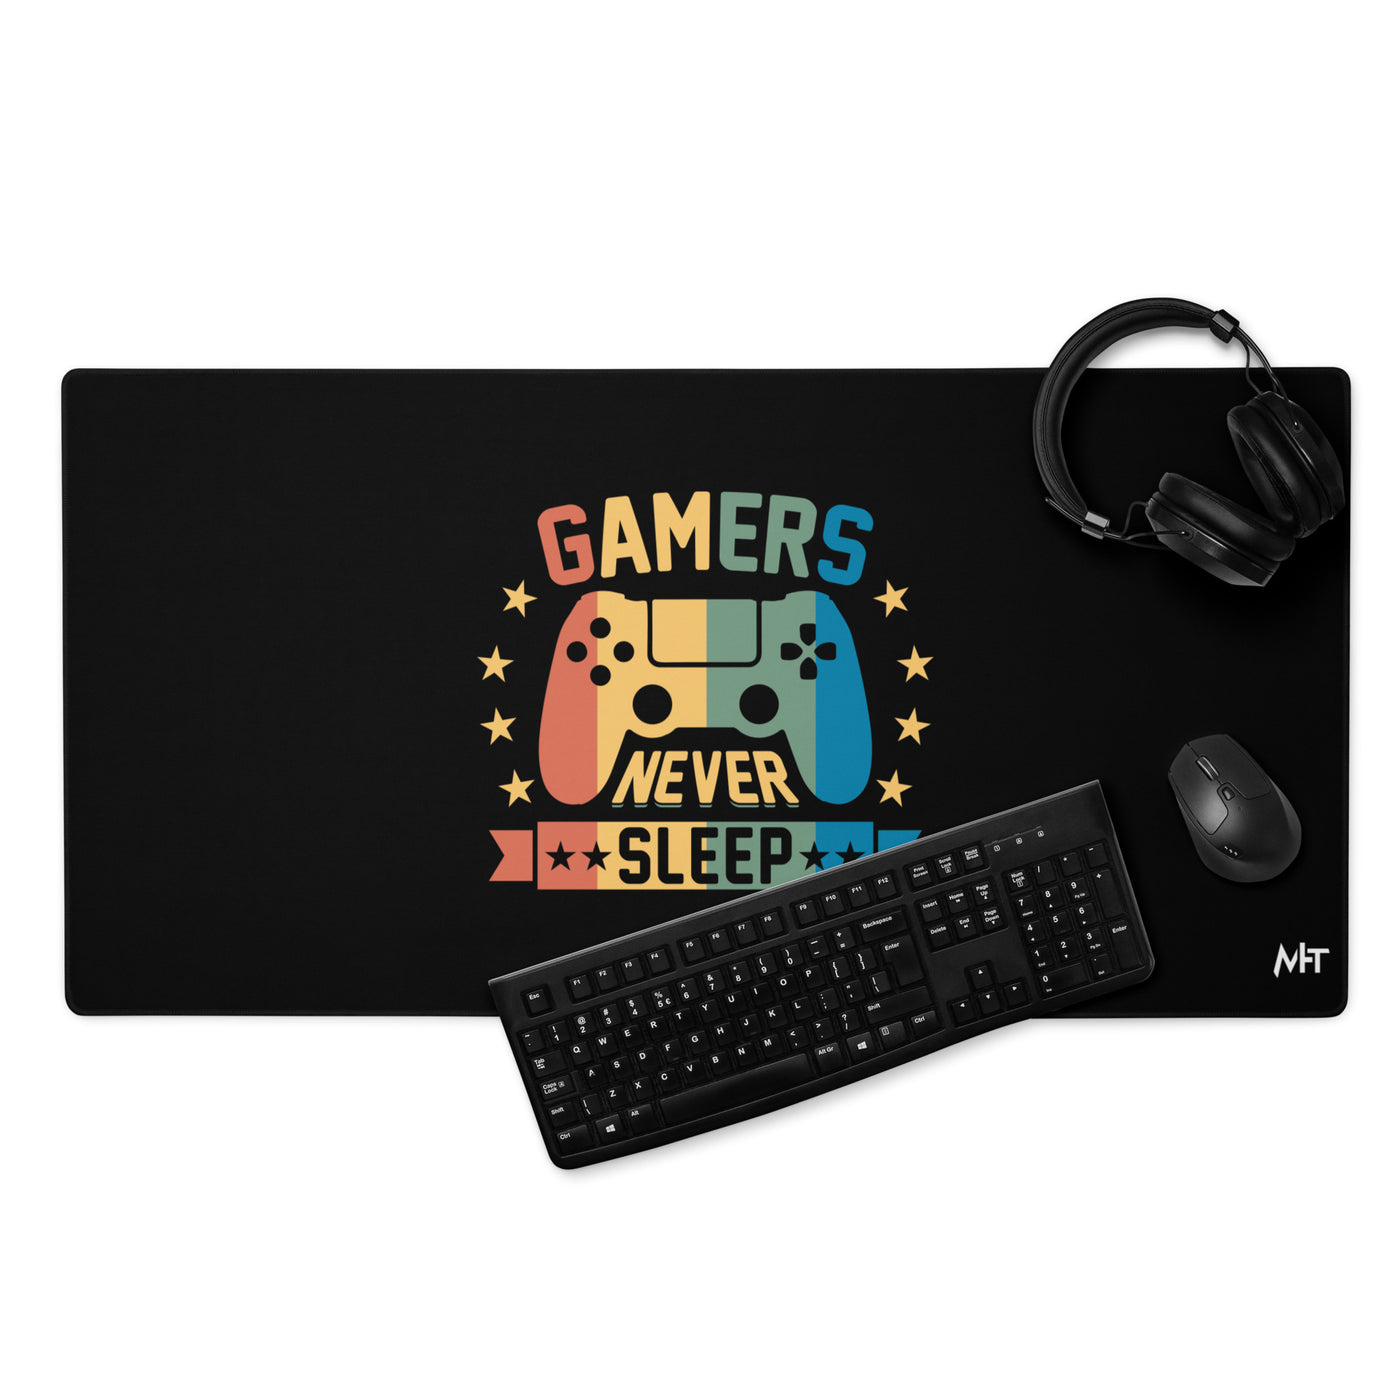 Gamers never sleep - Desk Mat